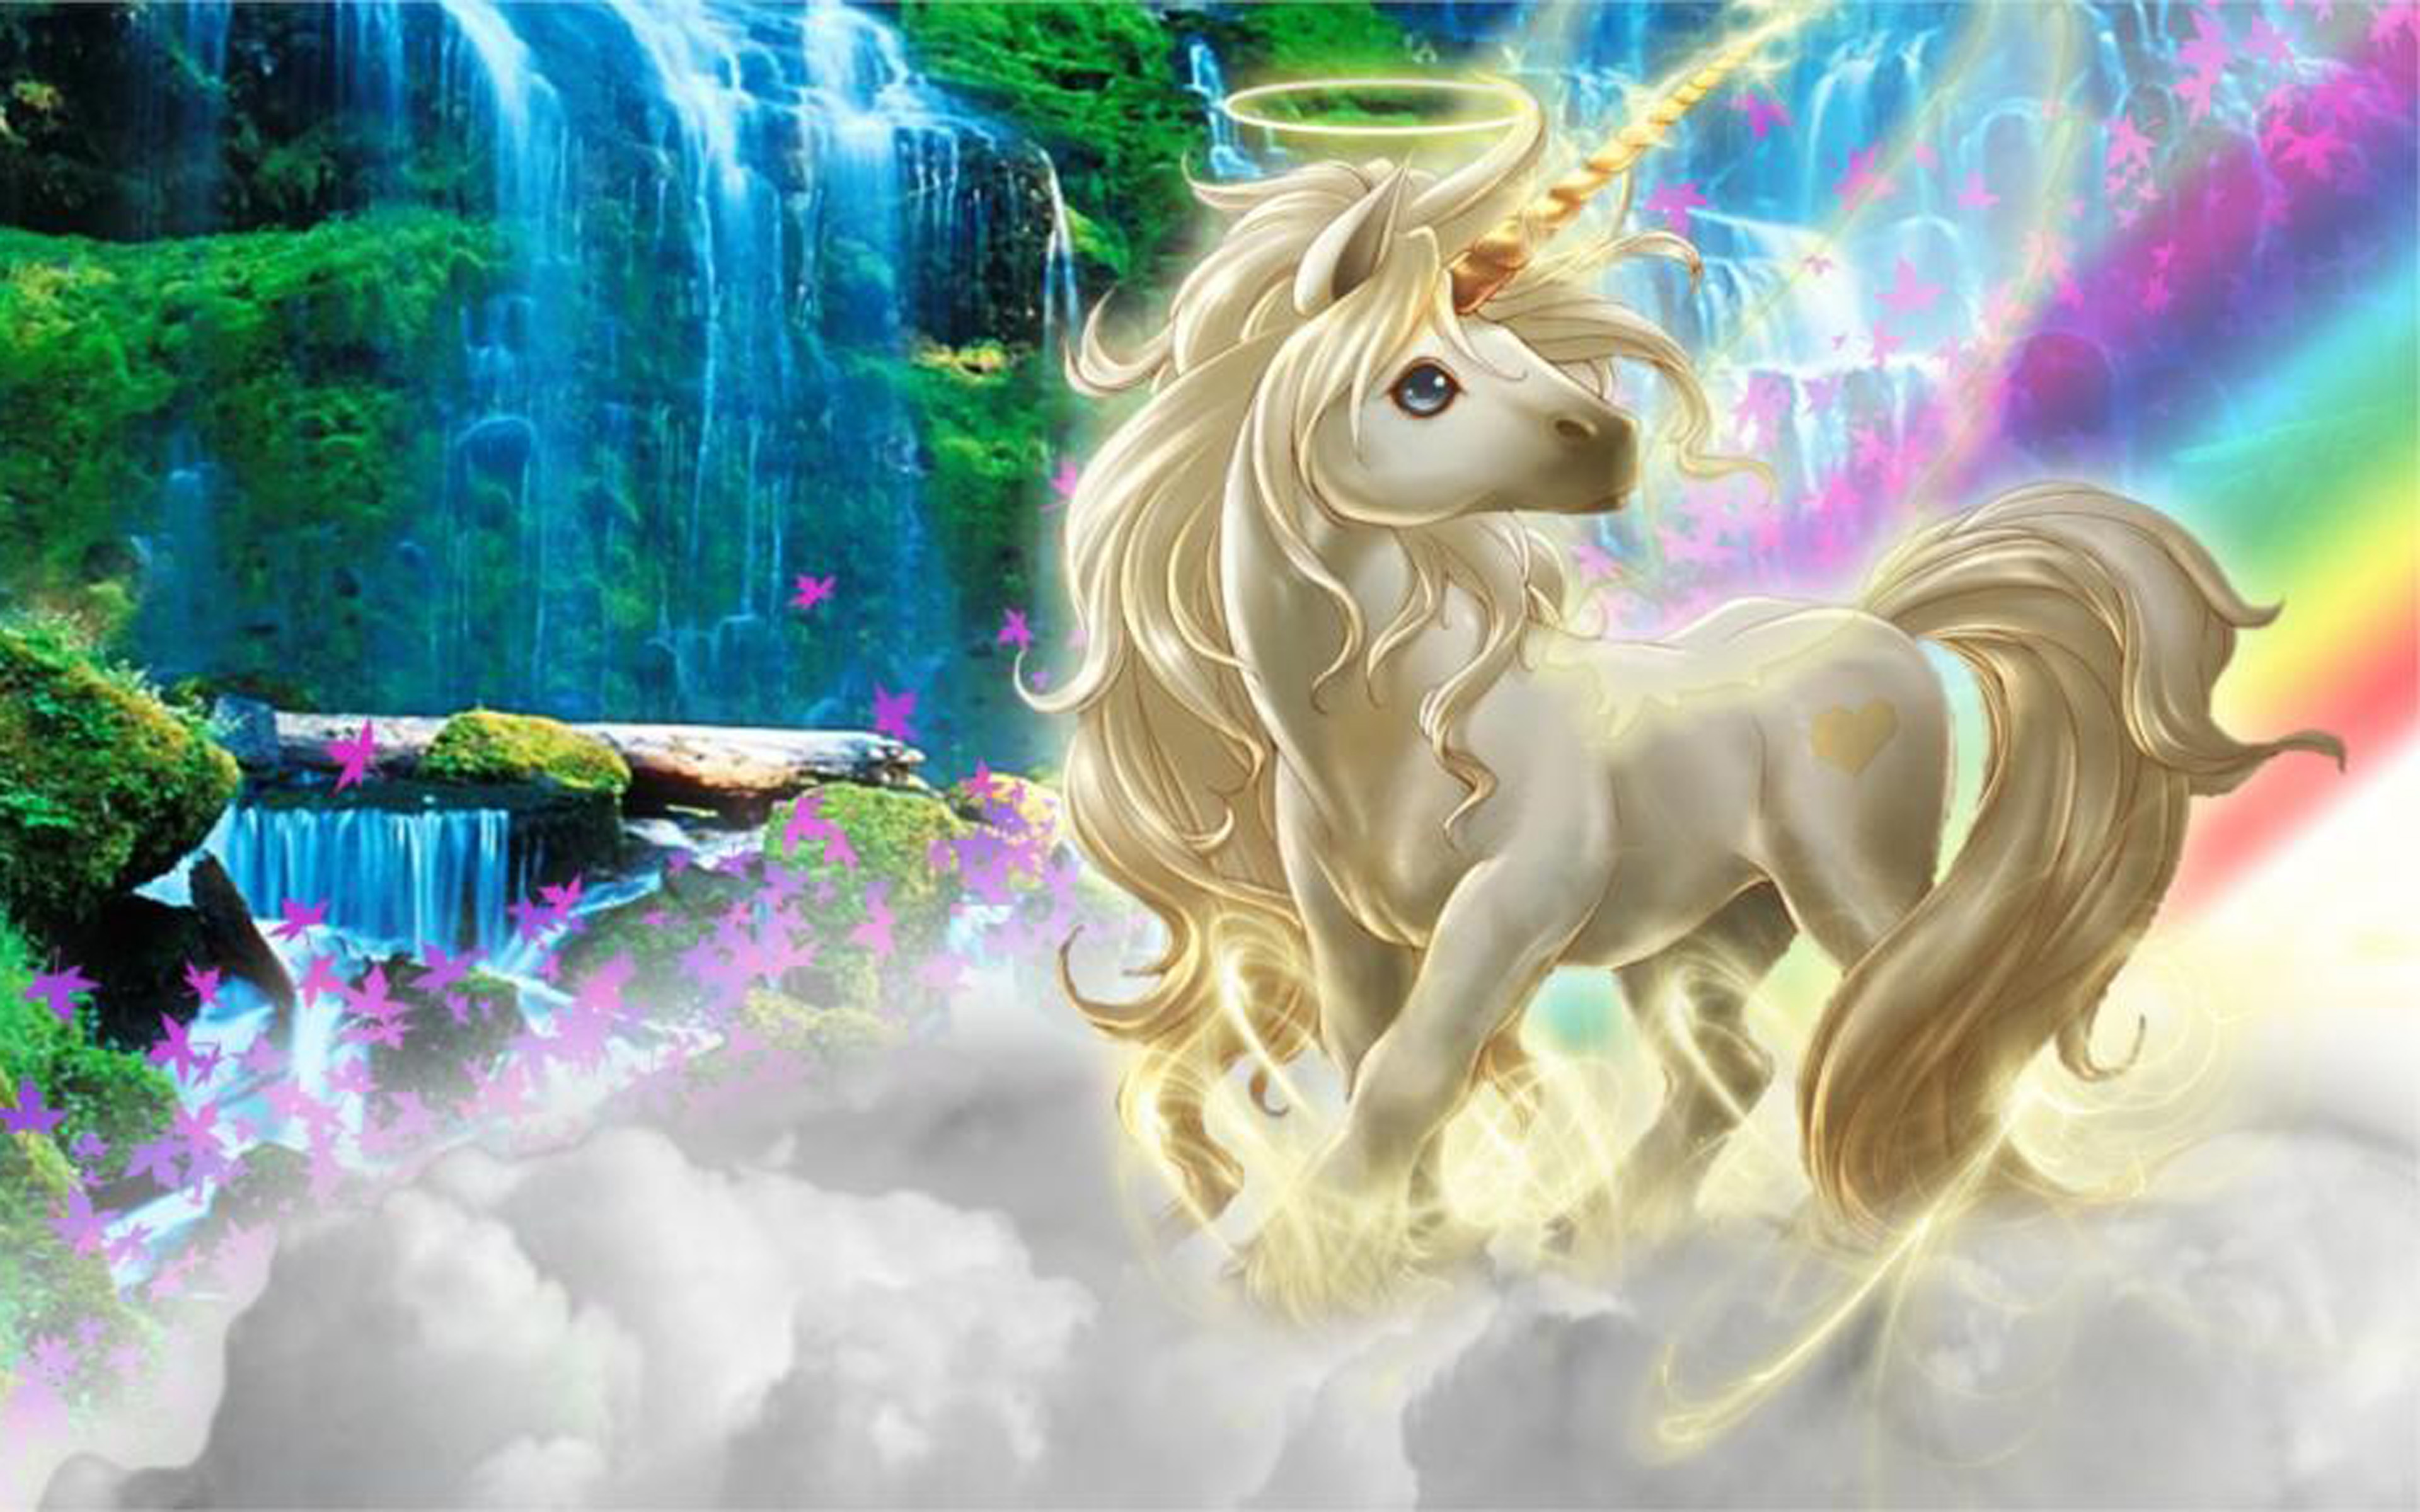 fondos de pantalla de unicornio hd,unicornio,personaje de ficción,criatura mítica,figura animal,cg artwork